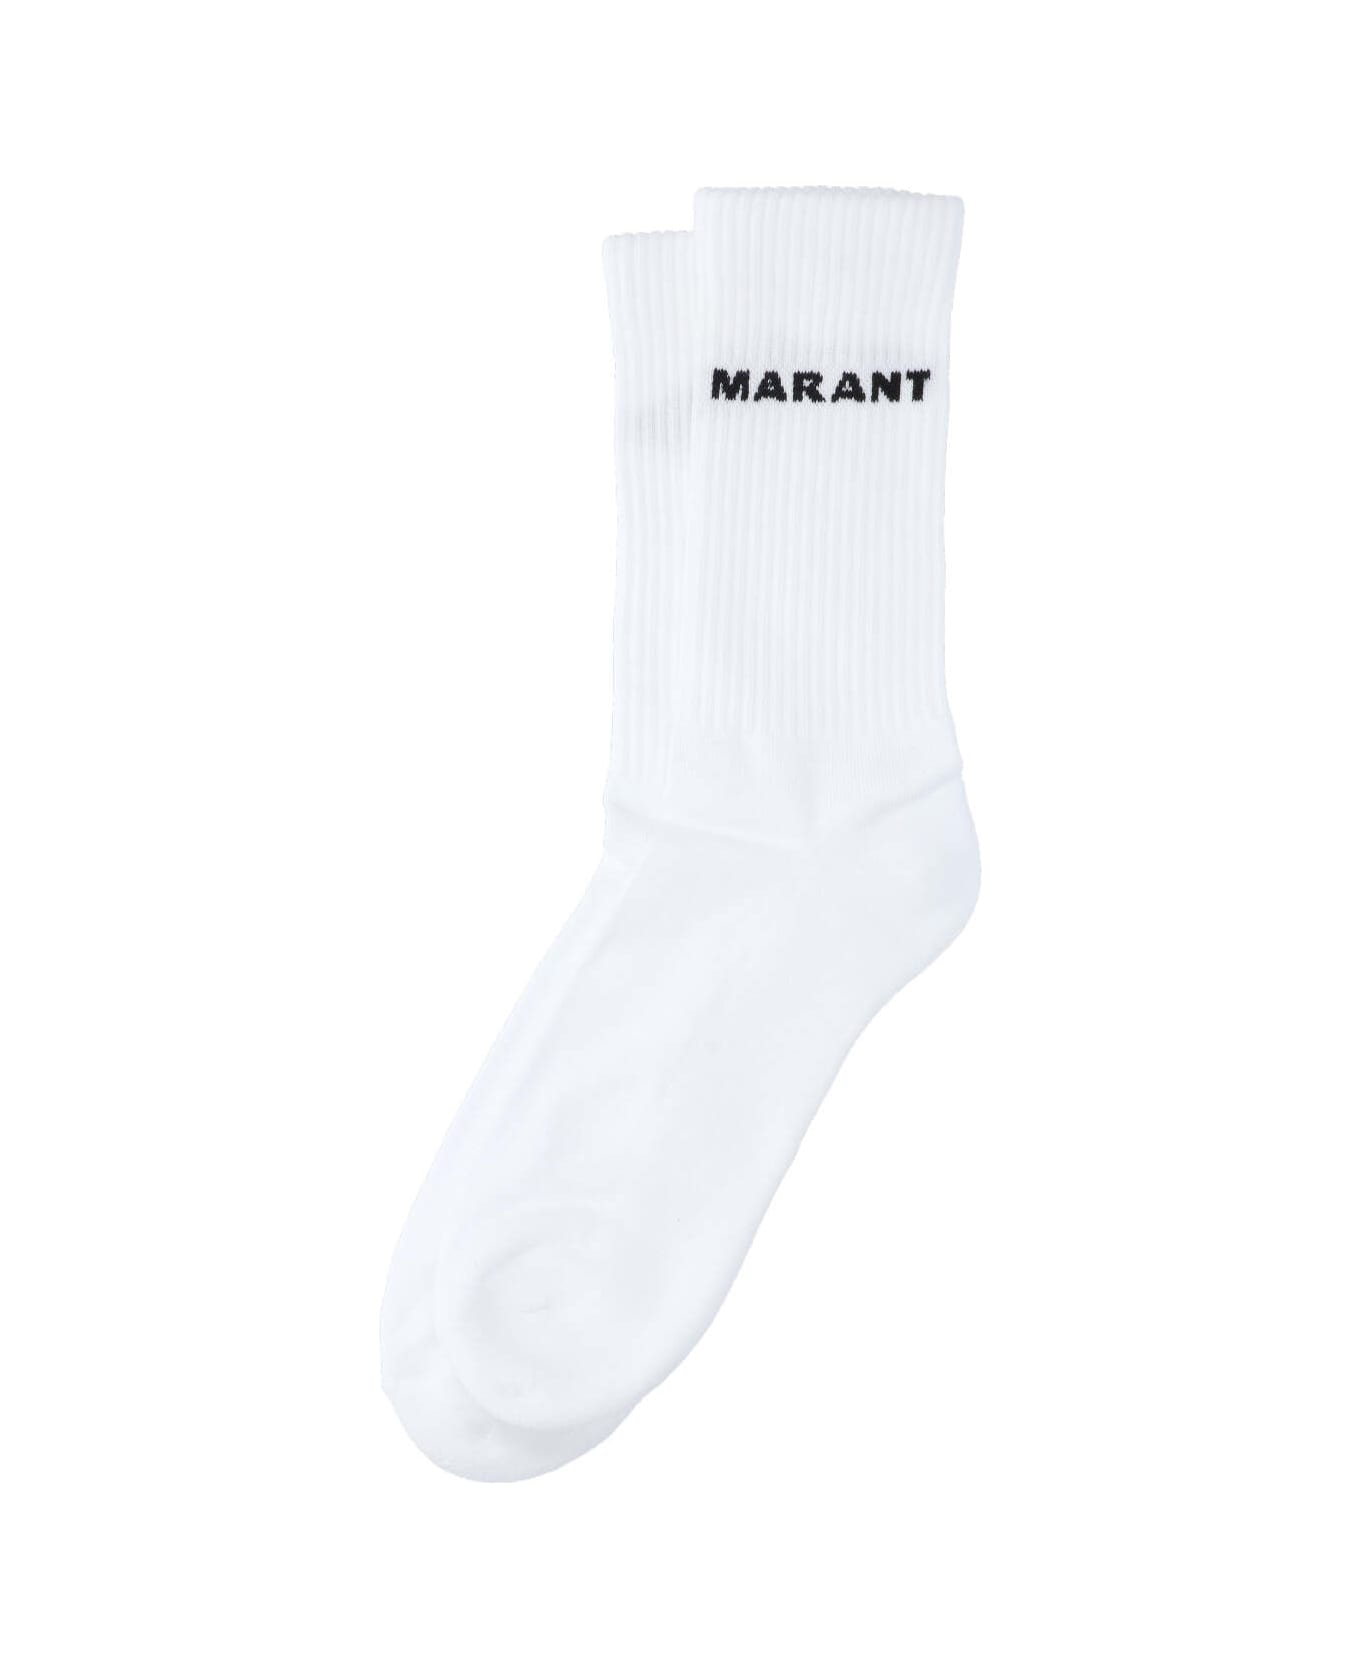 Isabel Marant Socks - White